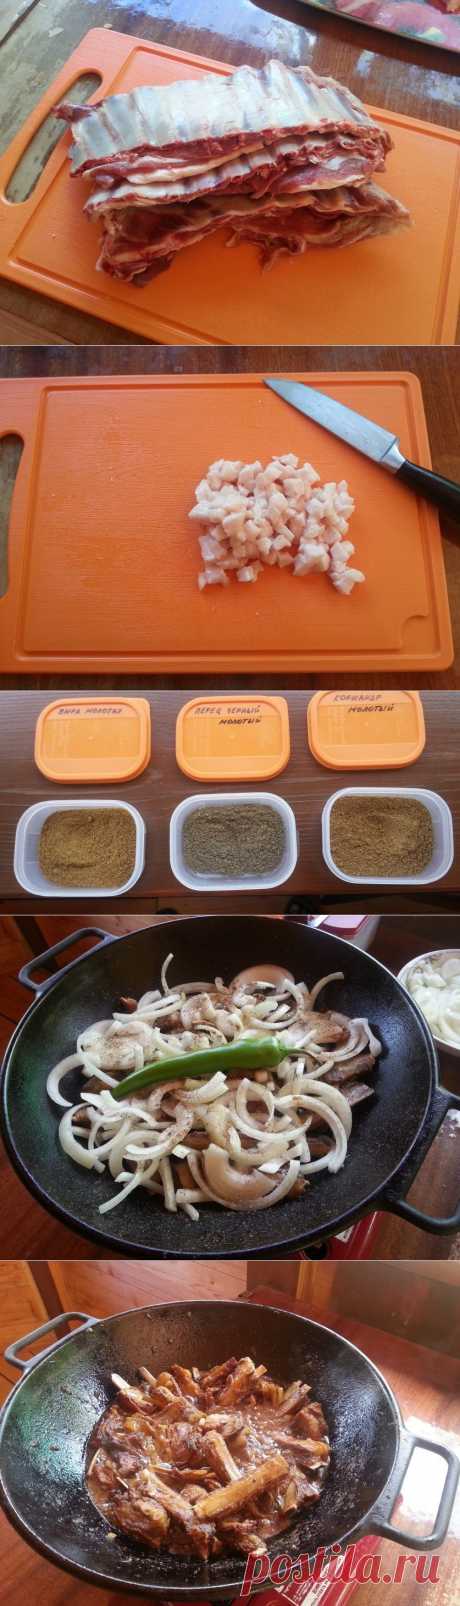 Как вкусно приготовить жареные бараньи ребрышки — Вкусные рецепты